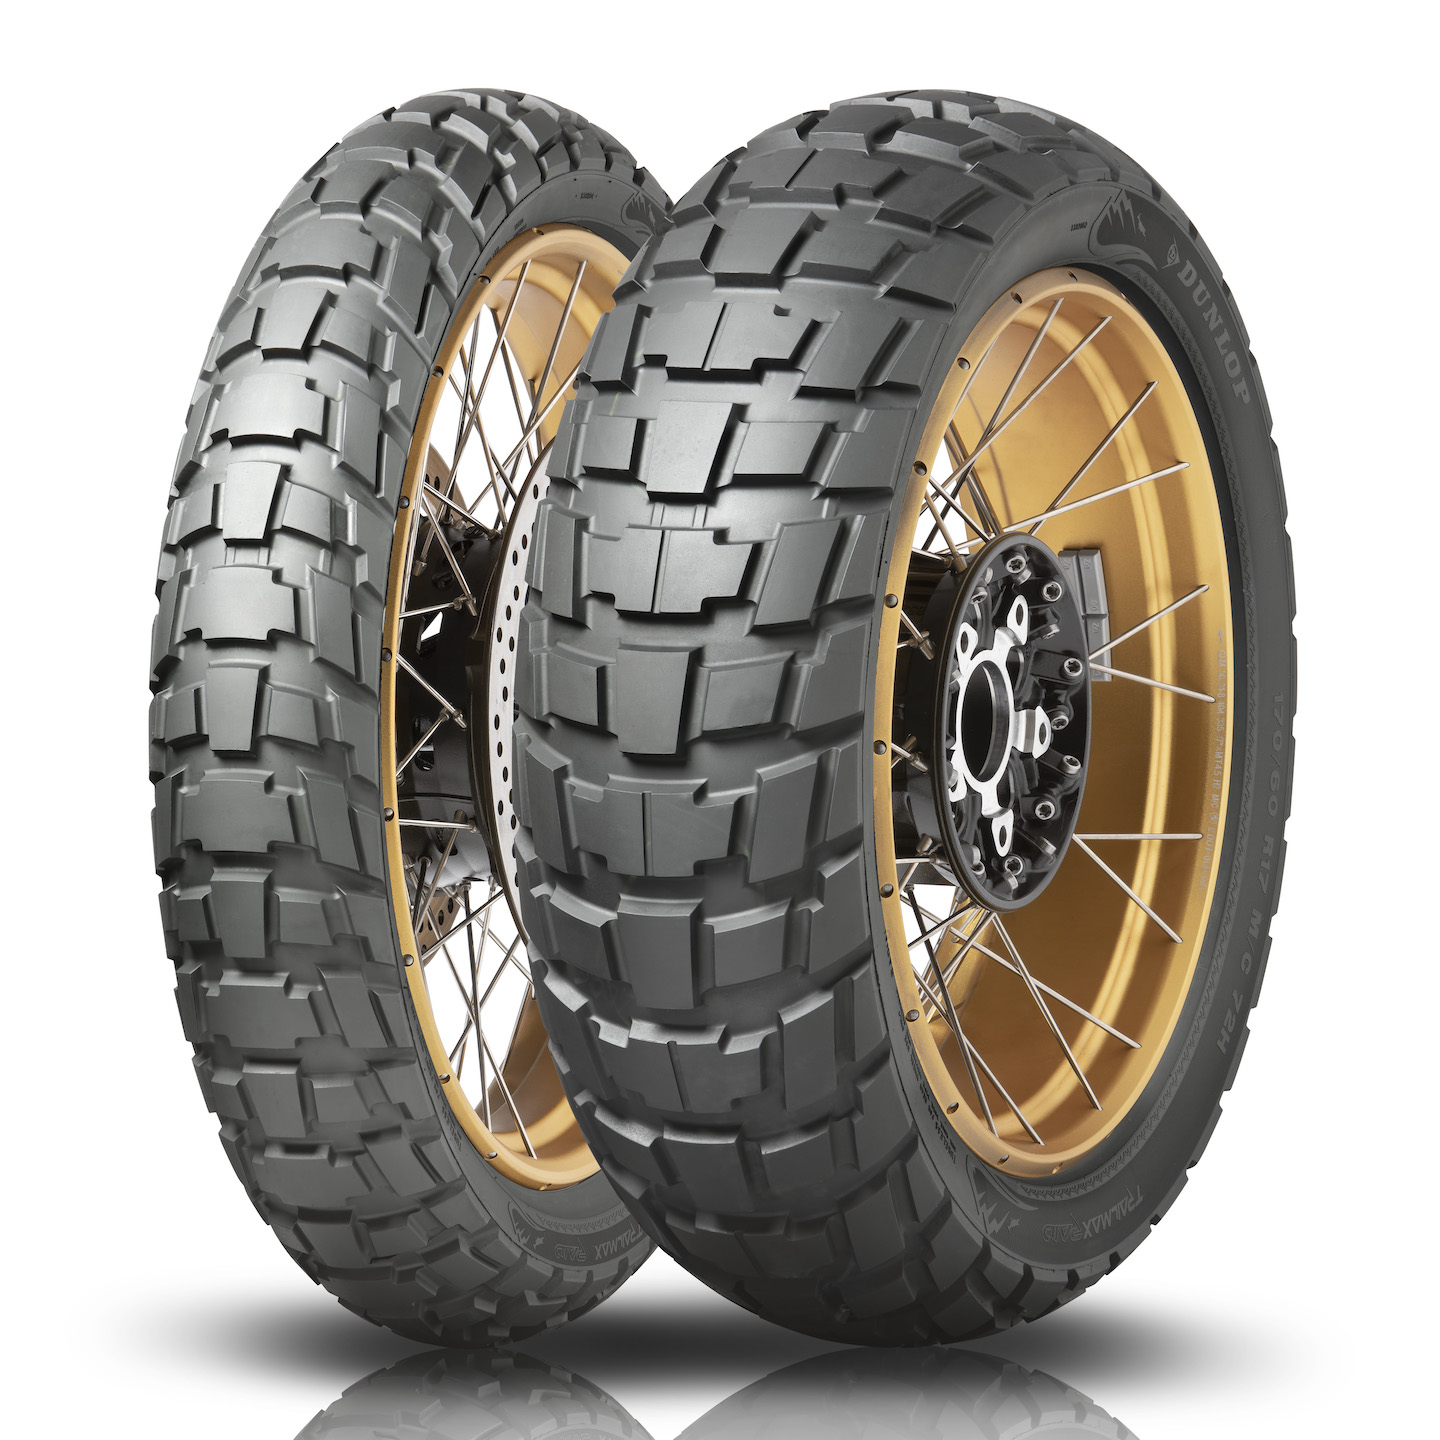 Gomme Nuove Dunlop 150/70 R17 69T TRAILMAX RAID pneumatici nuovi Estivo